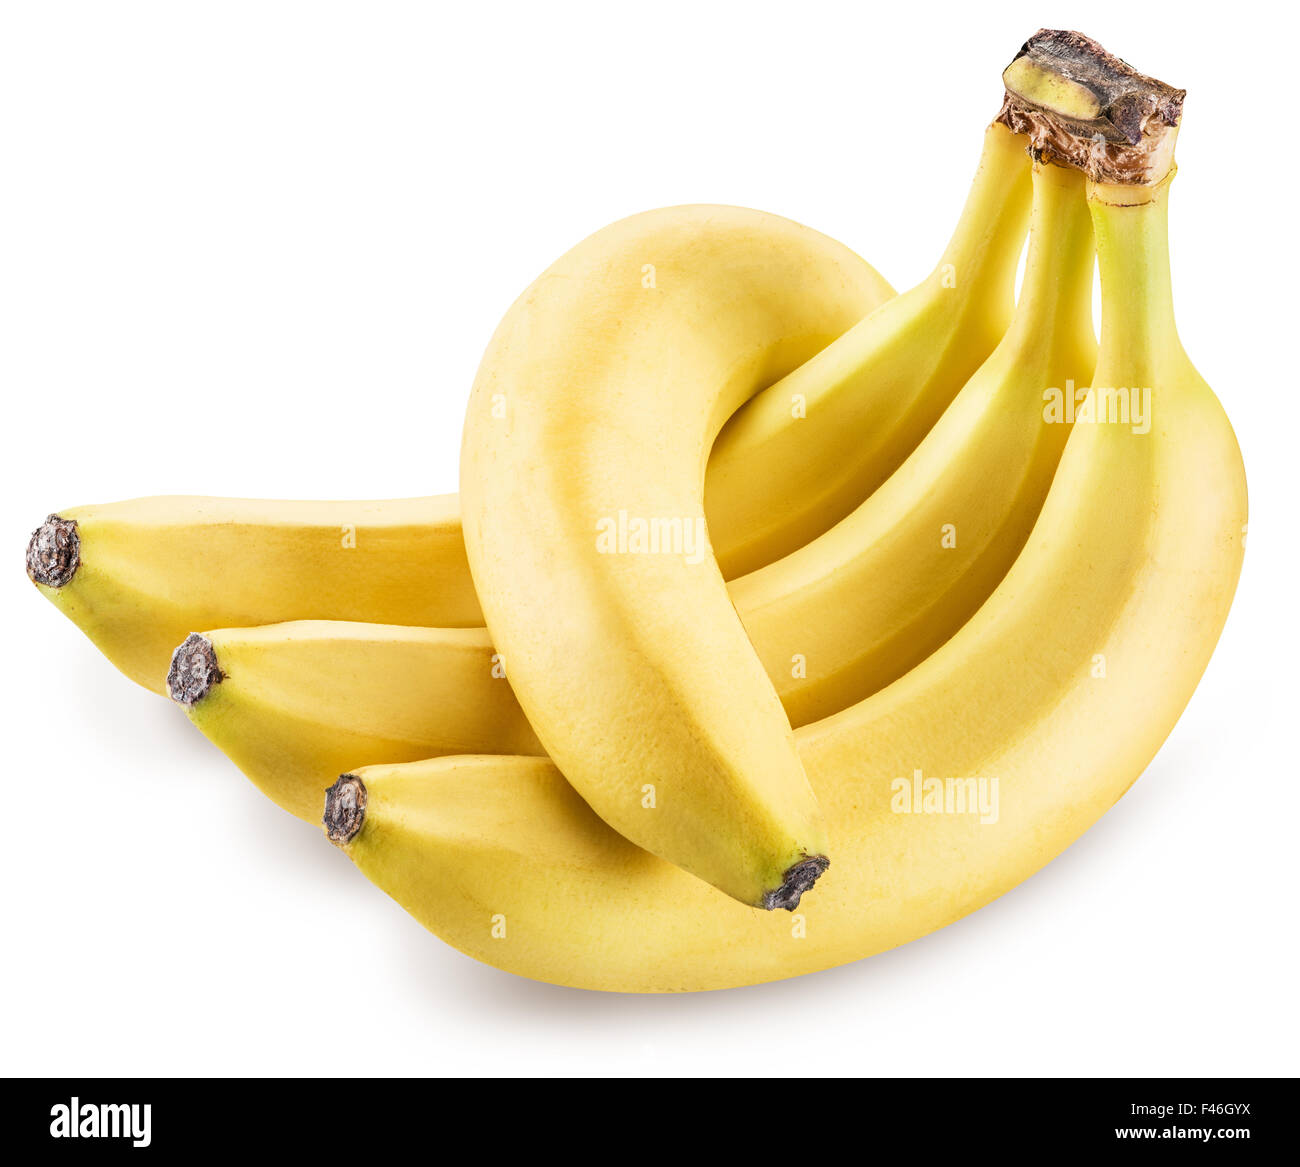 Bananen, die isoliert auf einem weißen Hintergrund. Bild ist von hoher Qualität. Clipping-Pfad. Stockfoto